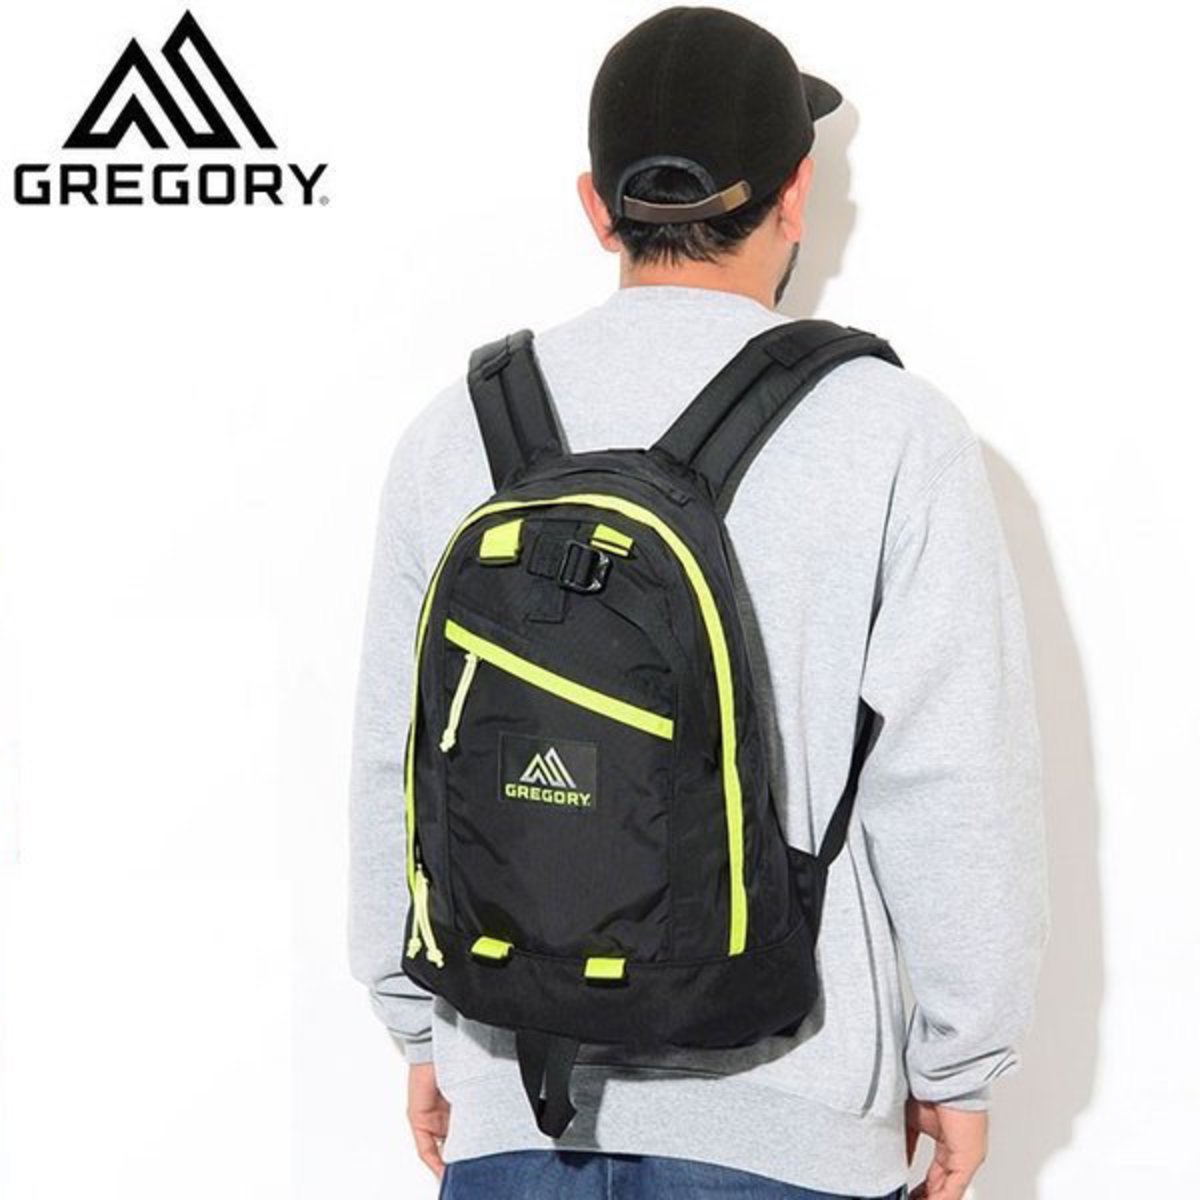 gregory backpack online